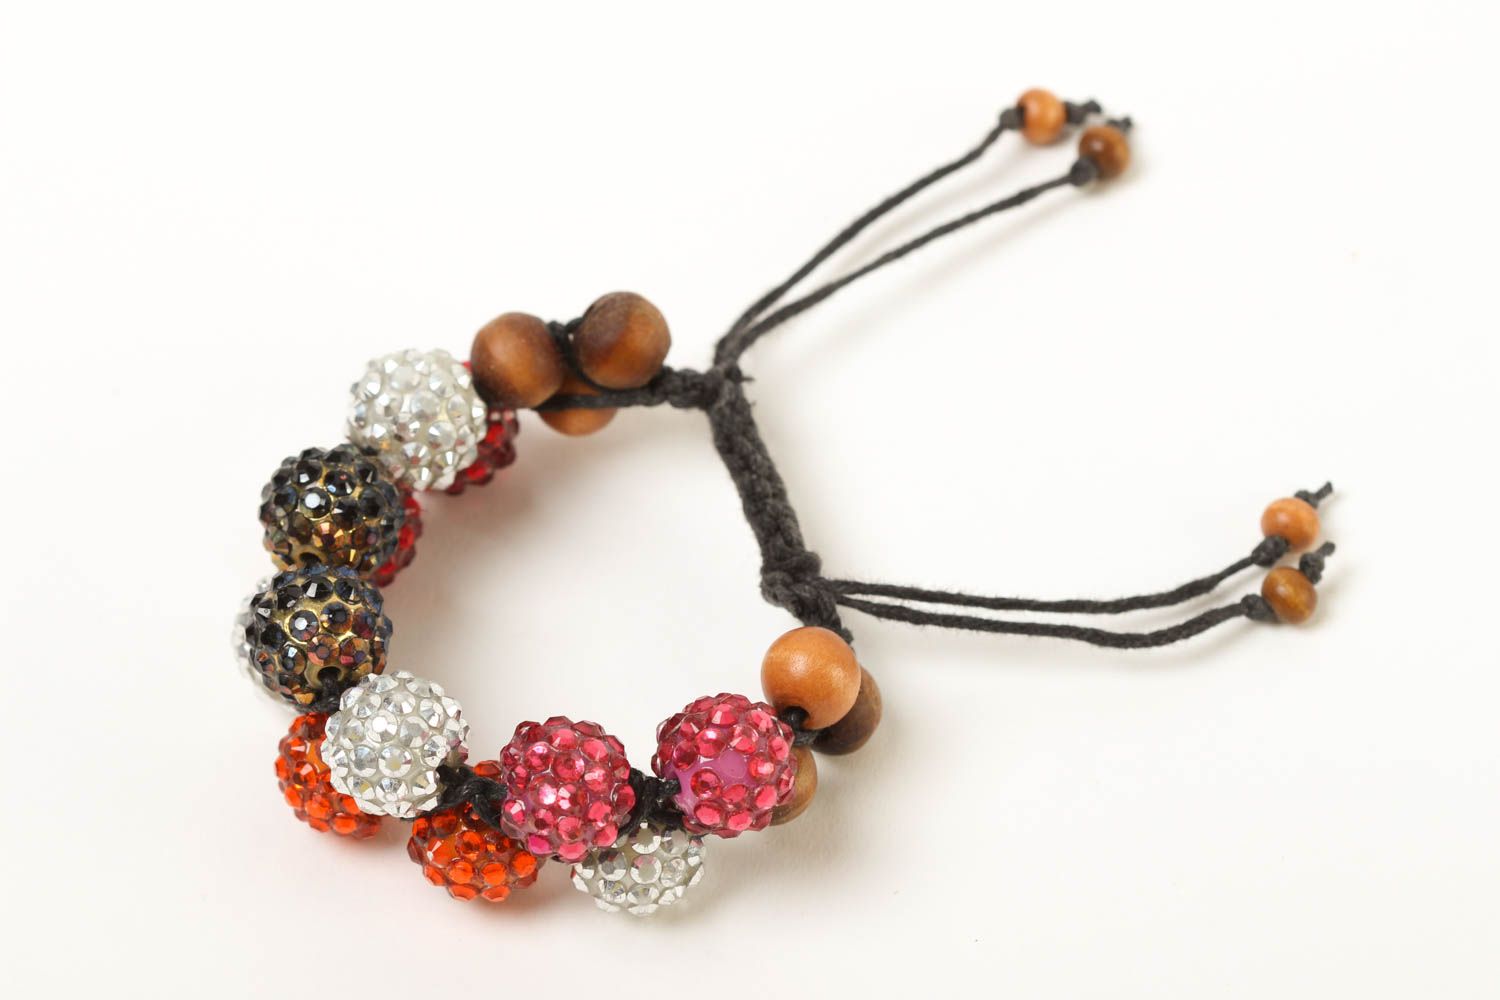 Armband handmade Mode Schmuck Frauen Accessoire buntes Armband mit Perlen  foto 1